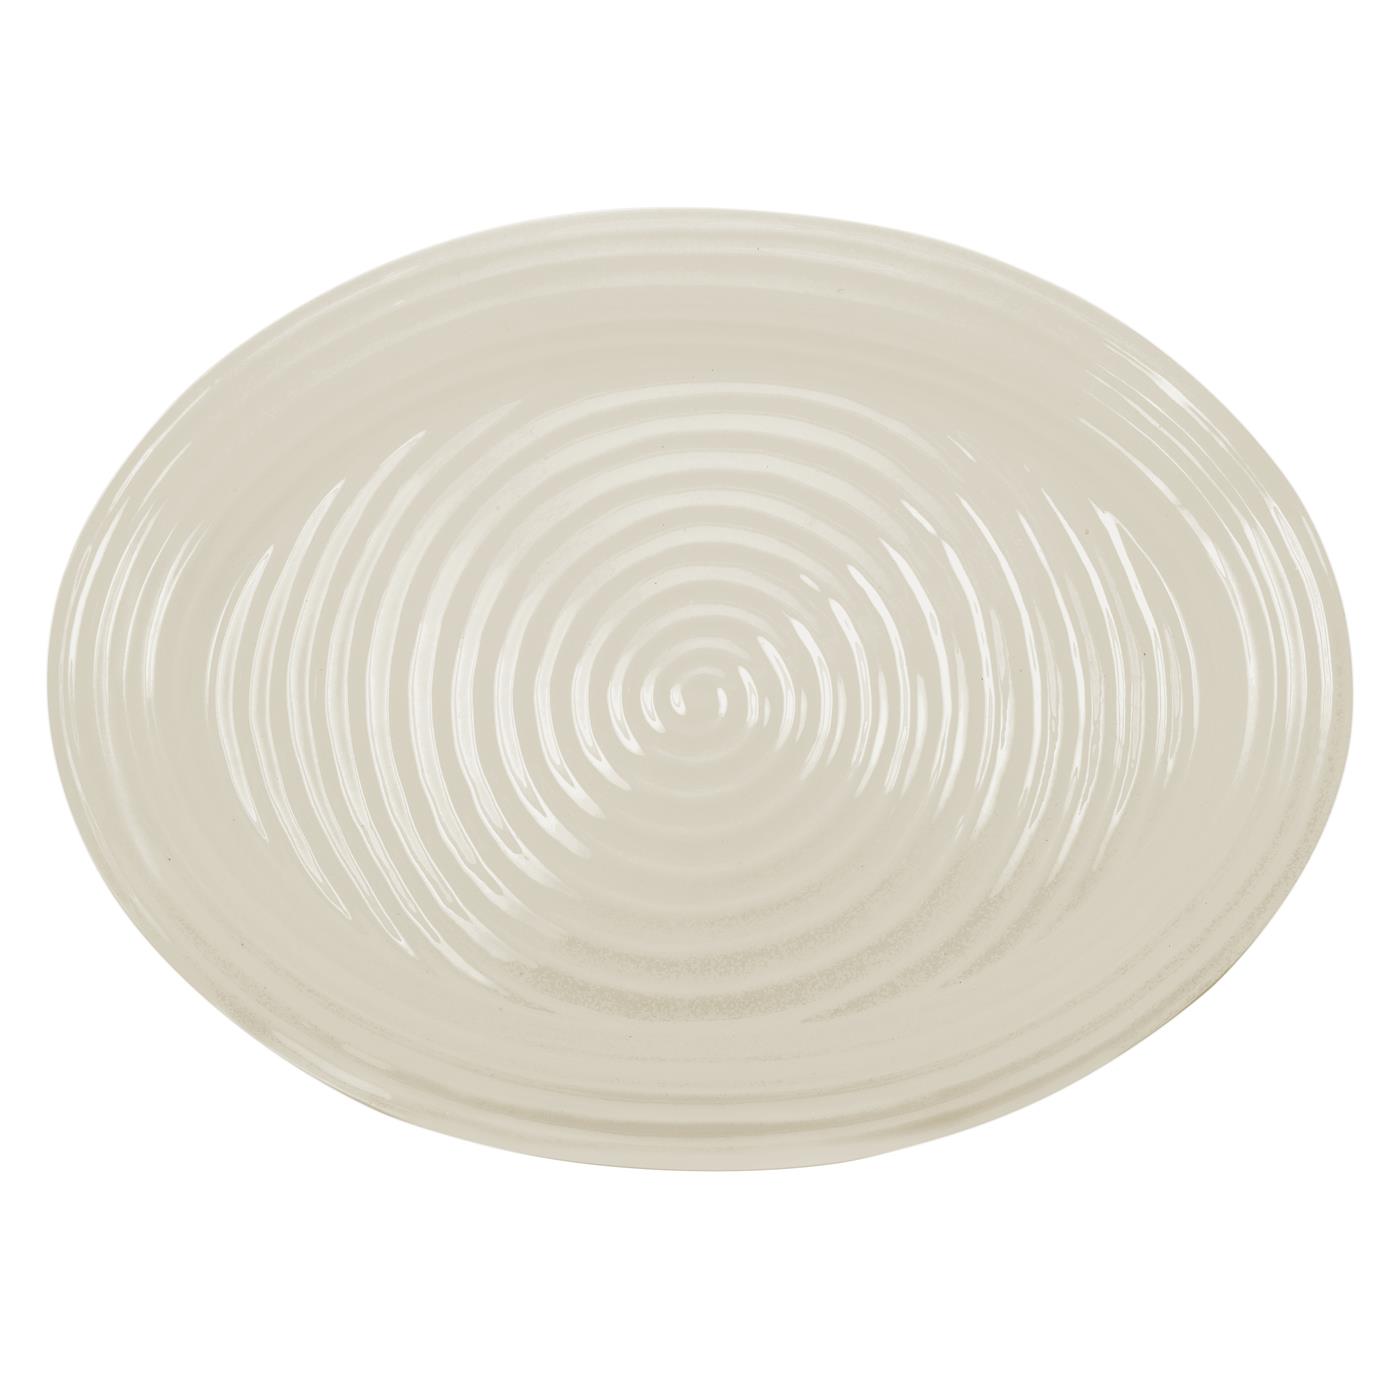 포트메리온 '소피 콘란' 라지 오발 접시 Portmeirion Sophie Conran Pebble Large Oval Platter